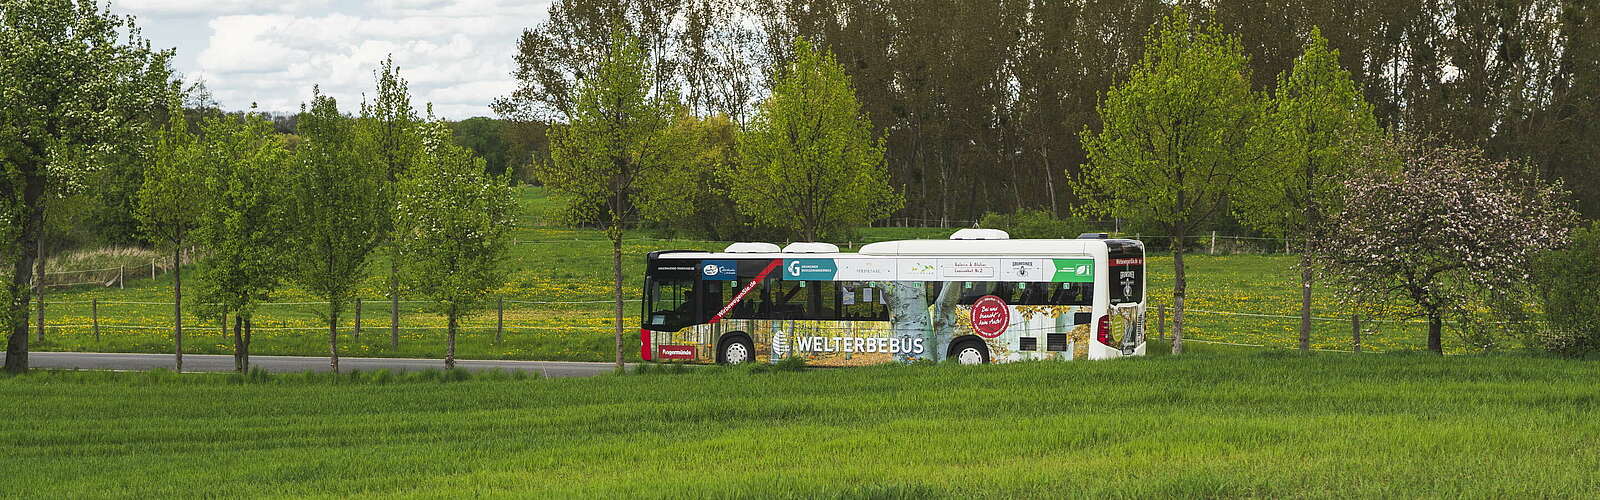 Mit dem Welterbebus in den Grumsin,
        
    

        Foto: TMB-Fotoarchiv/Steffen Lehmann